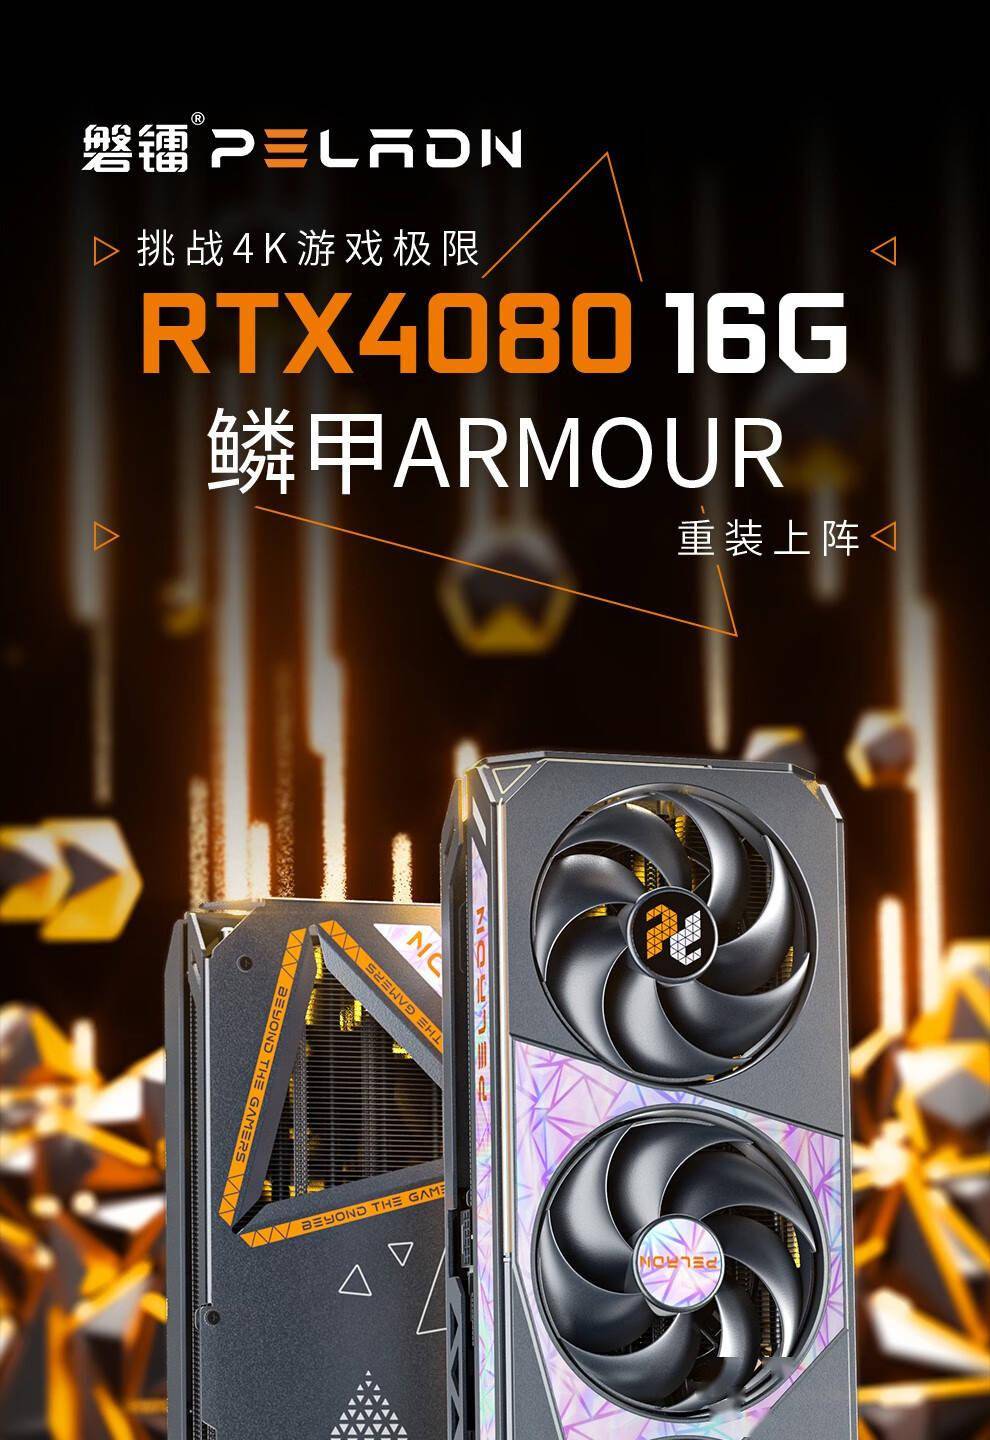 磐镭发布全新 GeForce RTX 4080 ARMOUR 显卡，售价为 9499 元